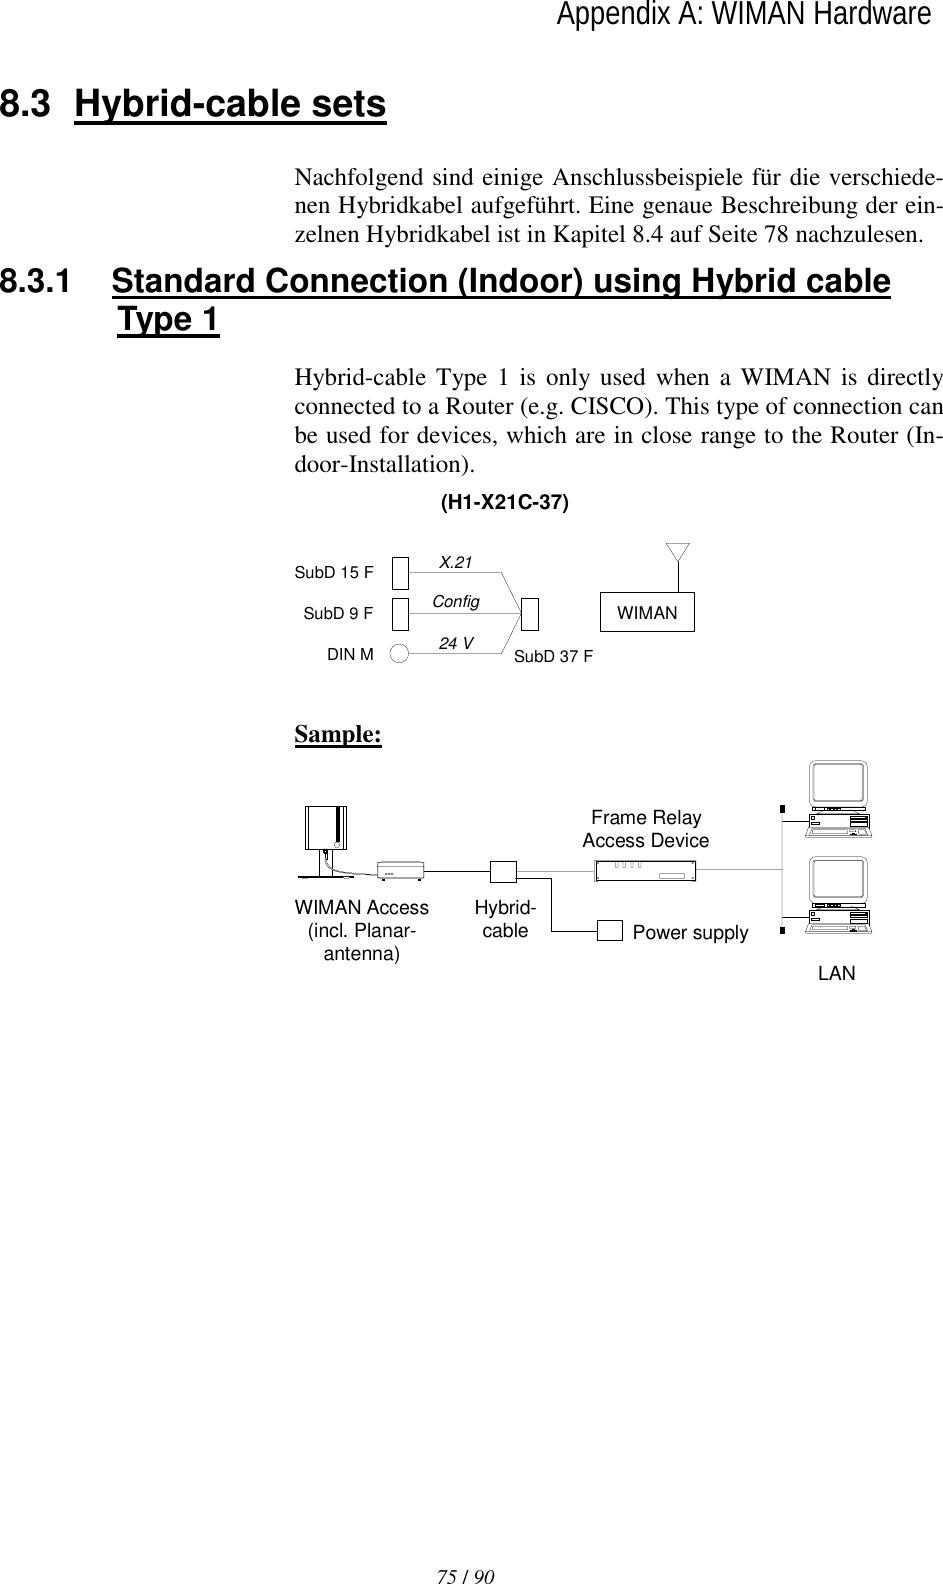   75 / 90lAppendix A: WIMAN Hardware  8.3 Hybrid-cable sets Nachfolgend sind einige Anschlussbeispiele für die verschiede-nen Hybridkabel aufgeführt. Eine genaue Beschreibung der ein-zelnen Hybridkabel ist in Kapitel 8.4 auf Seite 78 nachzulesen. 8.3.1  Standard Connection (Indoor) using Hybrid cable Type 1 Hybrid-cable Type 1 is only used when a WIMAN is directly connected to a Router (e.g. CISCO). This type of connection can be used for devices, which are in close range to the Router (In-door-Installation). SubD 37 FSubD 15 FSubD 9 FDIN M(H1-X21C-37)X.21Config24 VWIMAN  Sample: Frame RelayAccess DevicePower supplyHybrid-cableWIMAN Access(incl. Planar-antenna) LAN  